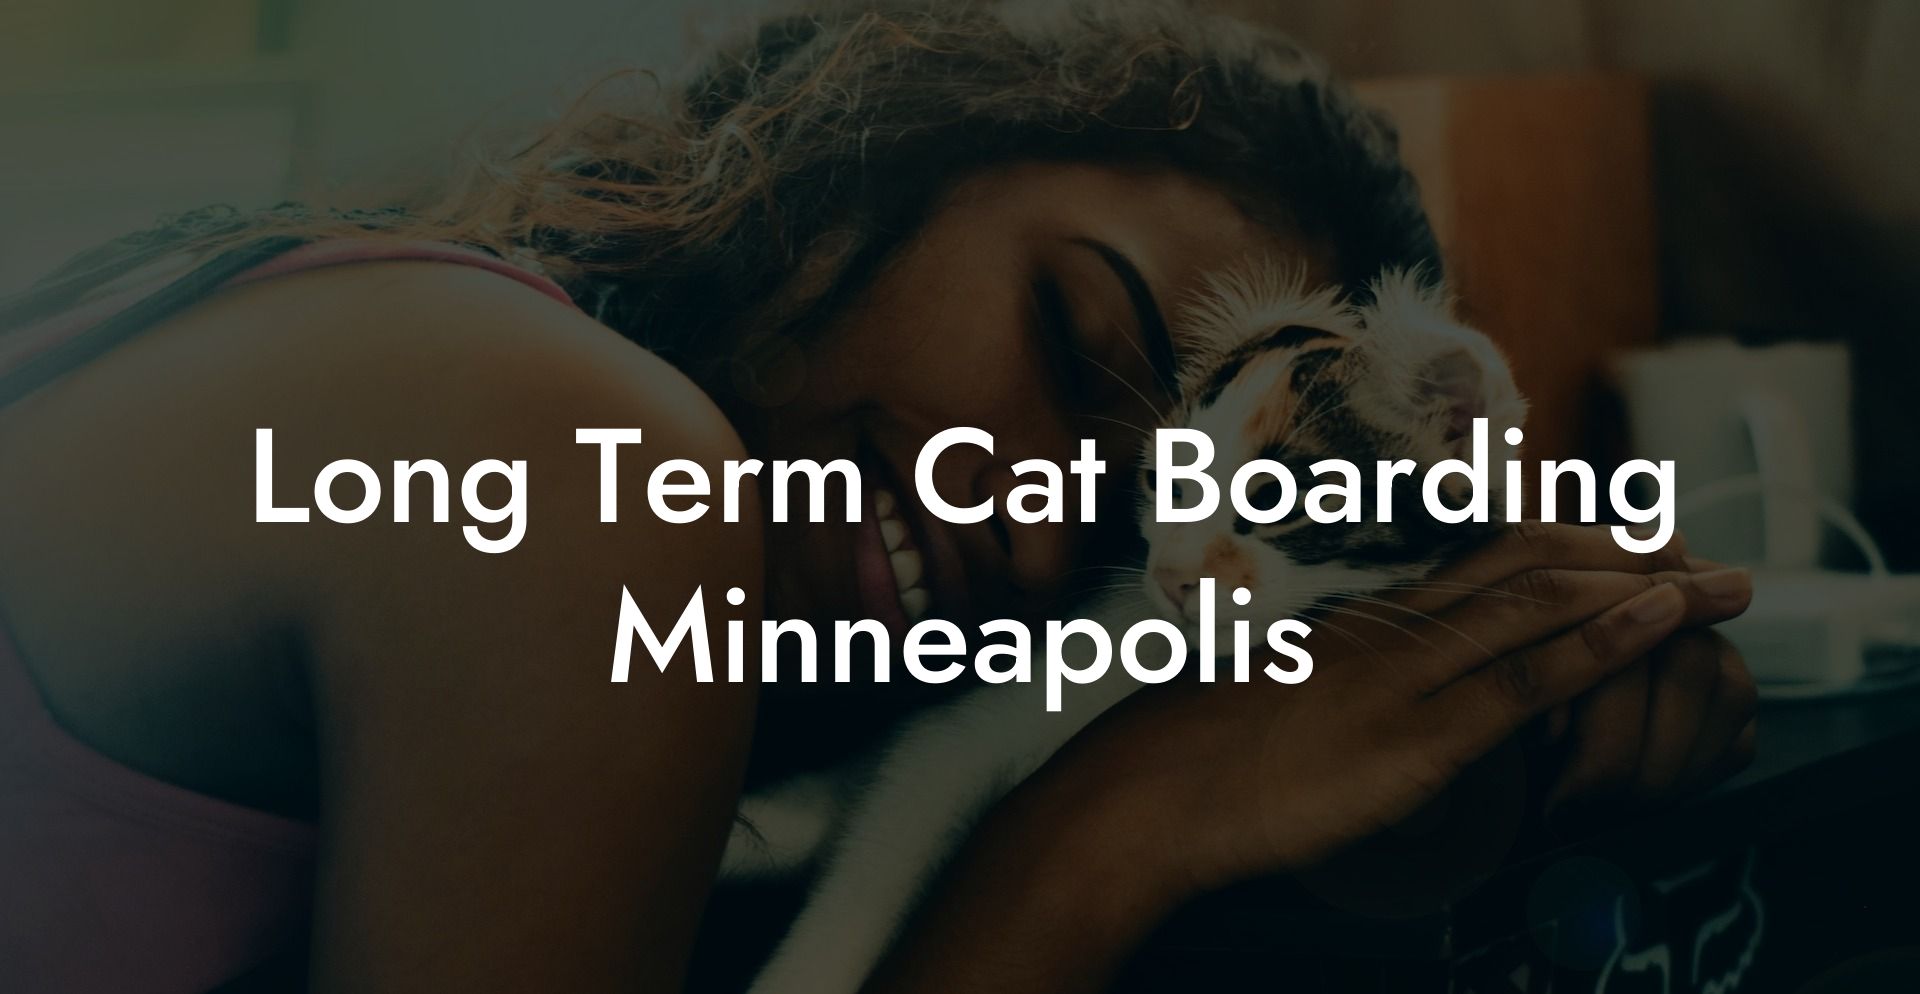 Long Term Cat Boarding Minneapolis